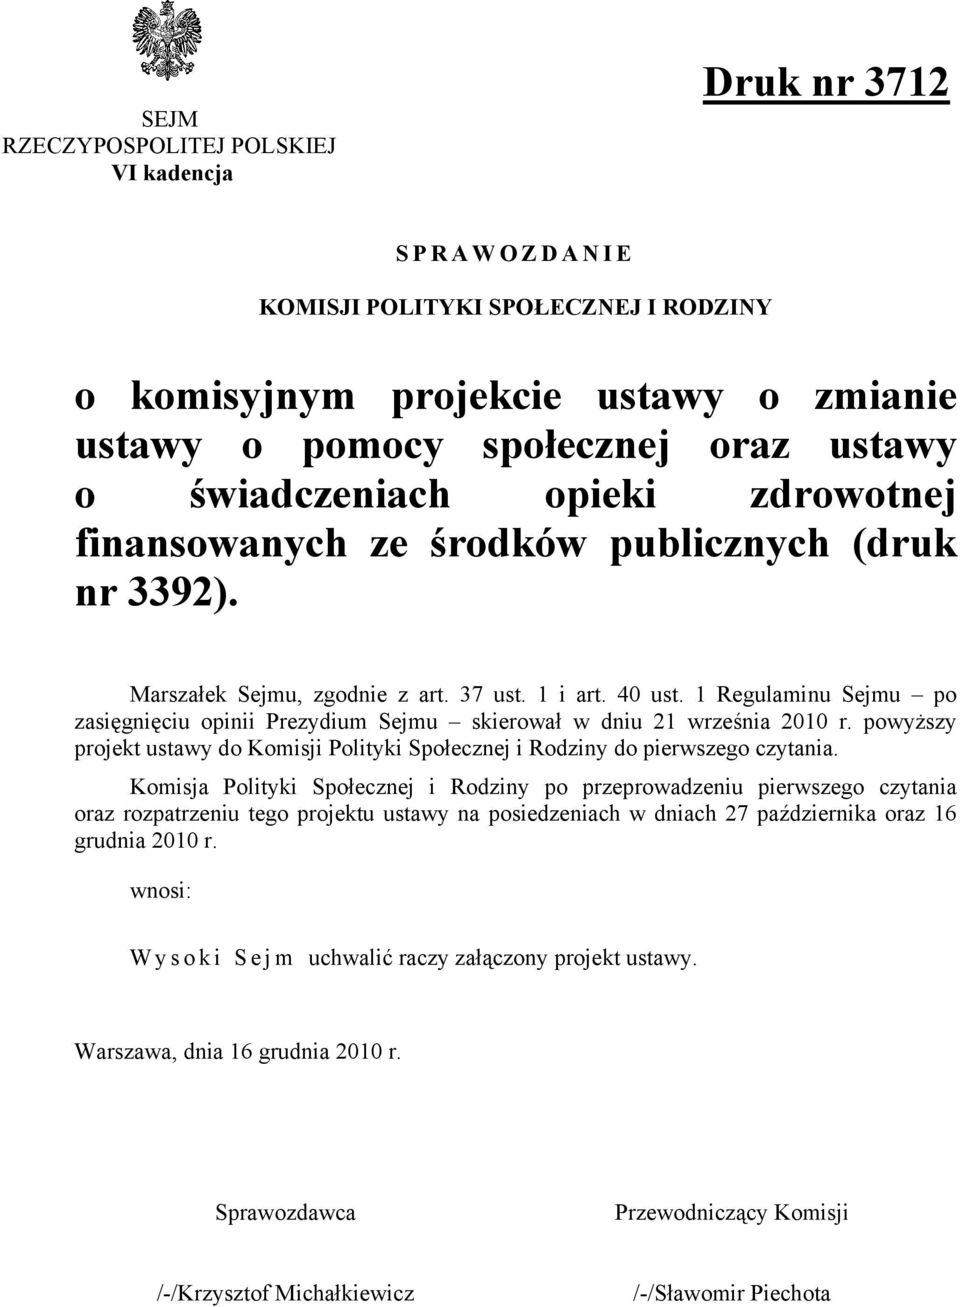 1 Regulaminu Sejmu po zasięgnięciu opinii Prezydium Sejmu skierował w dniu 21 września 2010 r. powyższy projekt ustawy do Komisji Polityki Społecznej i Rodziny do pierwszego czytania.